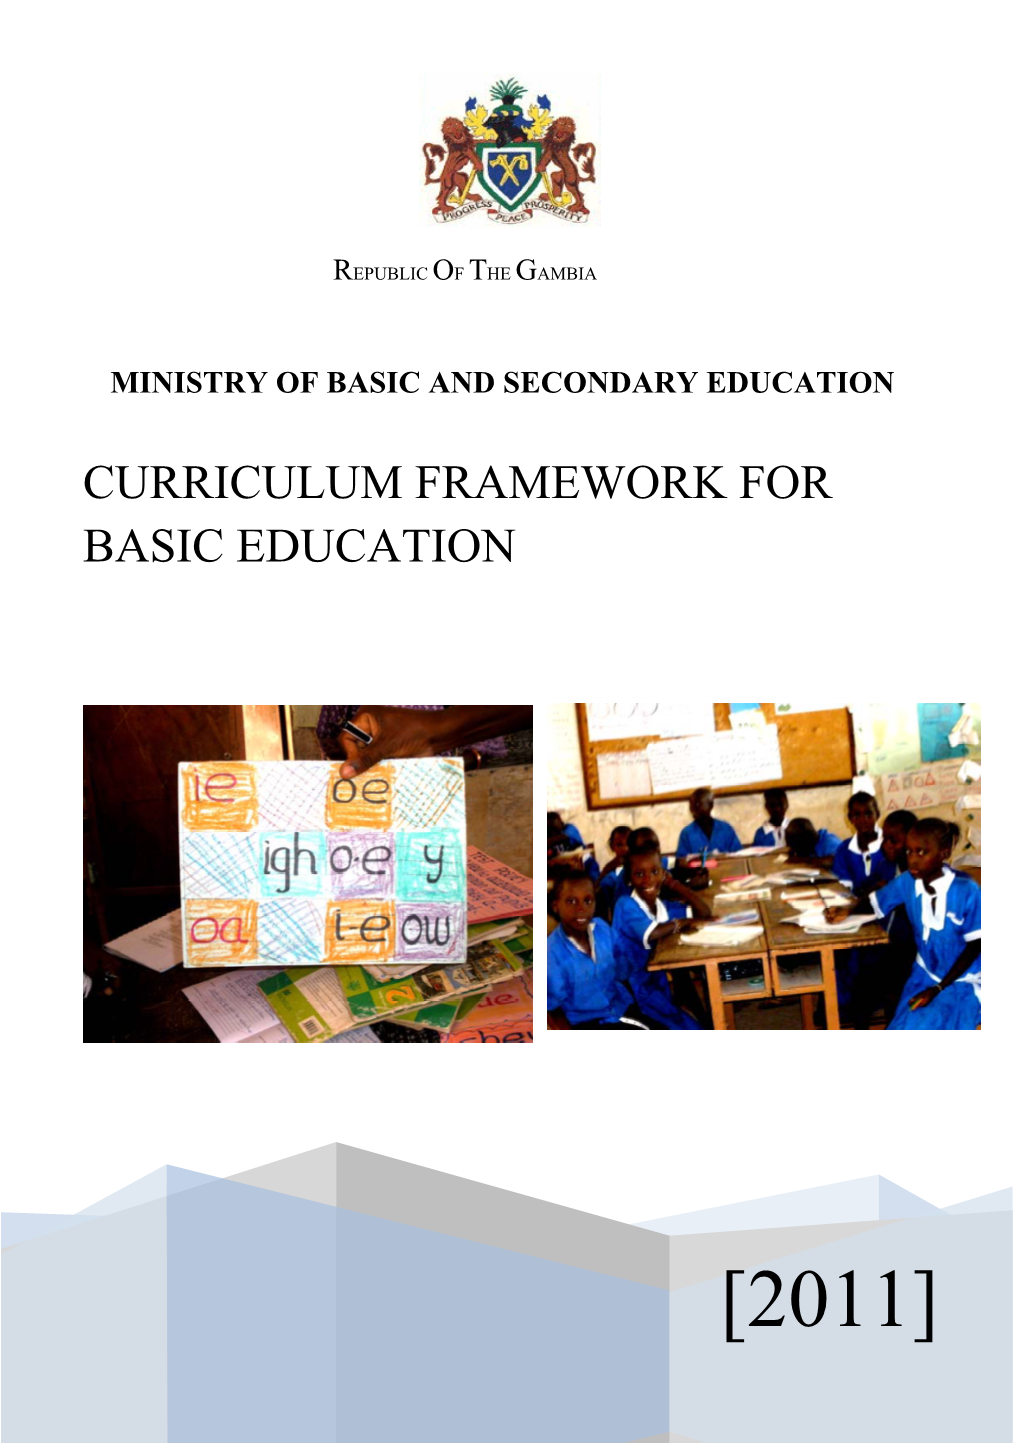 Curriculum Framework for Basic Education